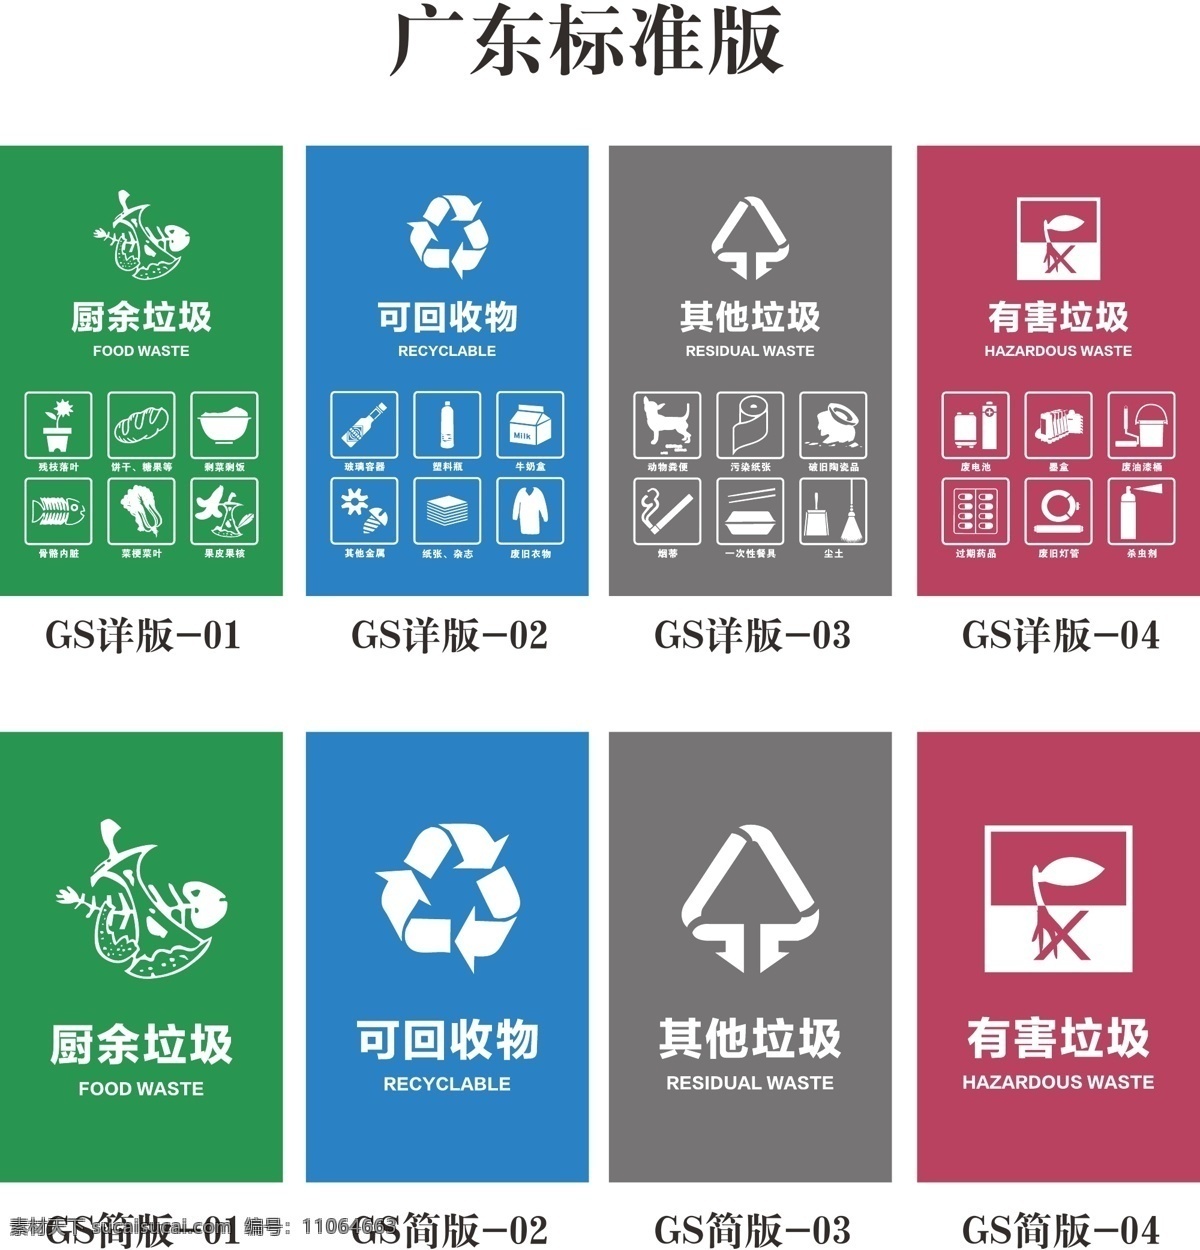 垃圾分类 垃圾分类桶贴 桶贴广东版 广东版 垃圾分类标贴